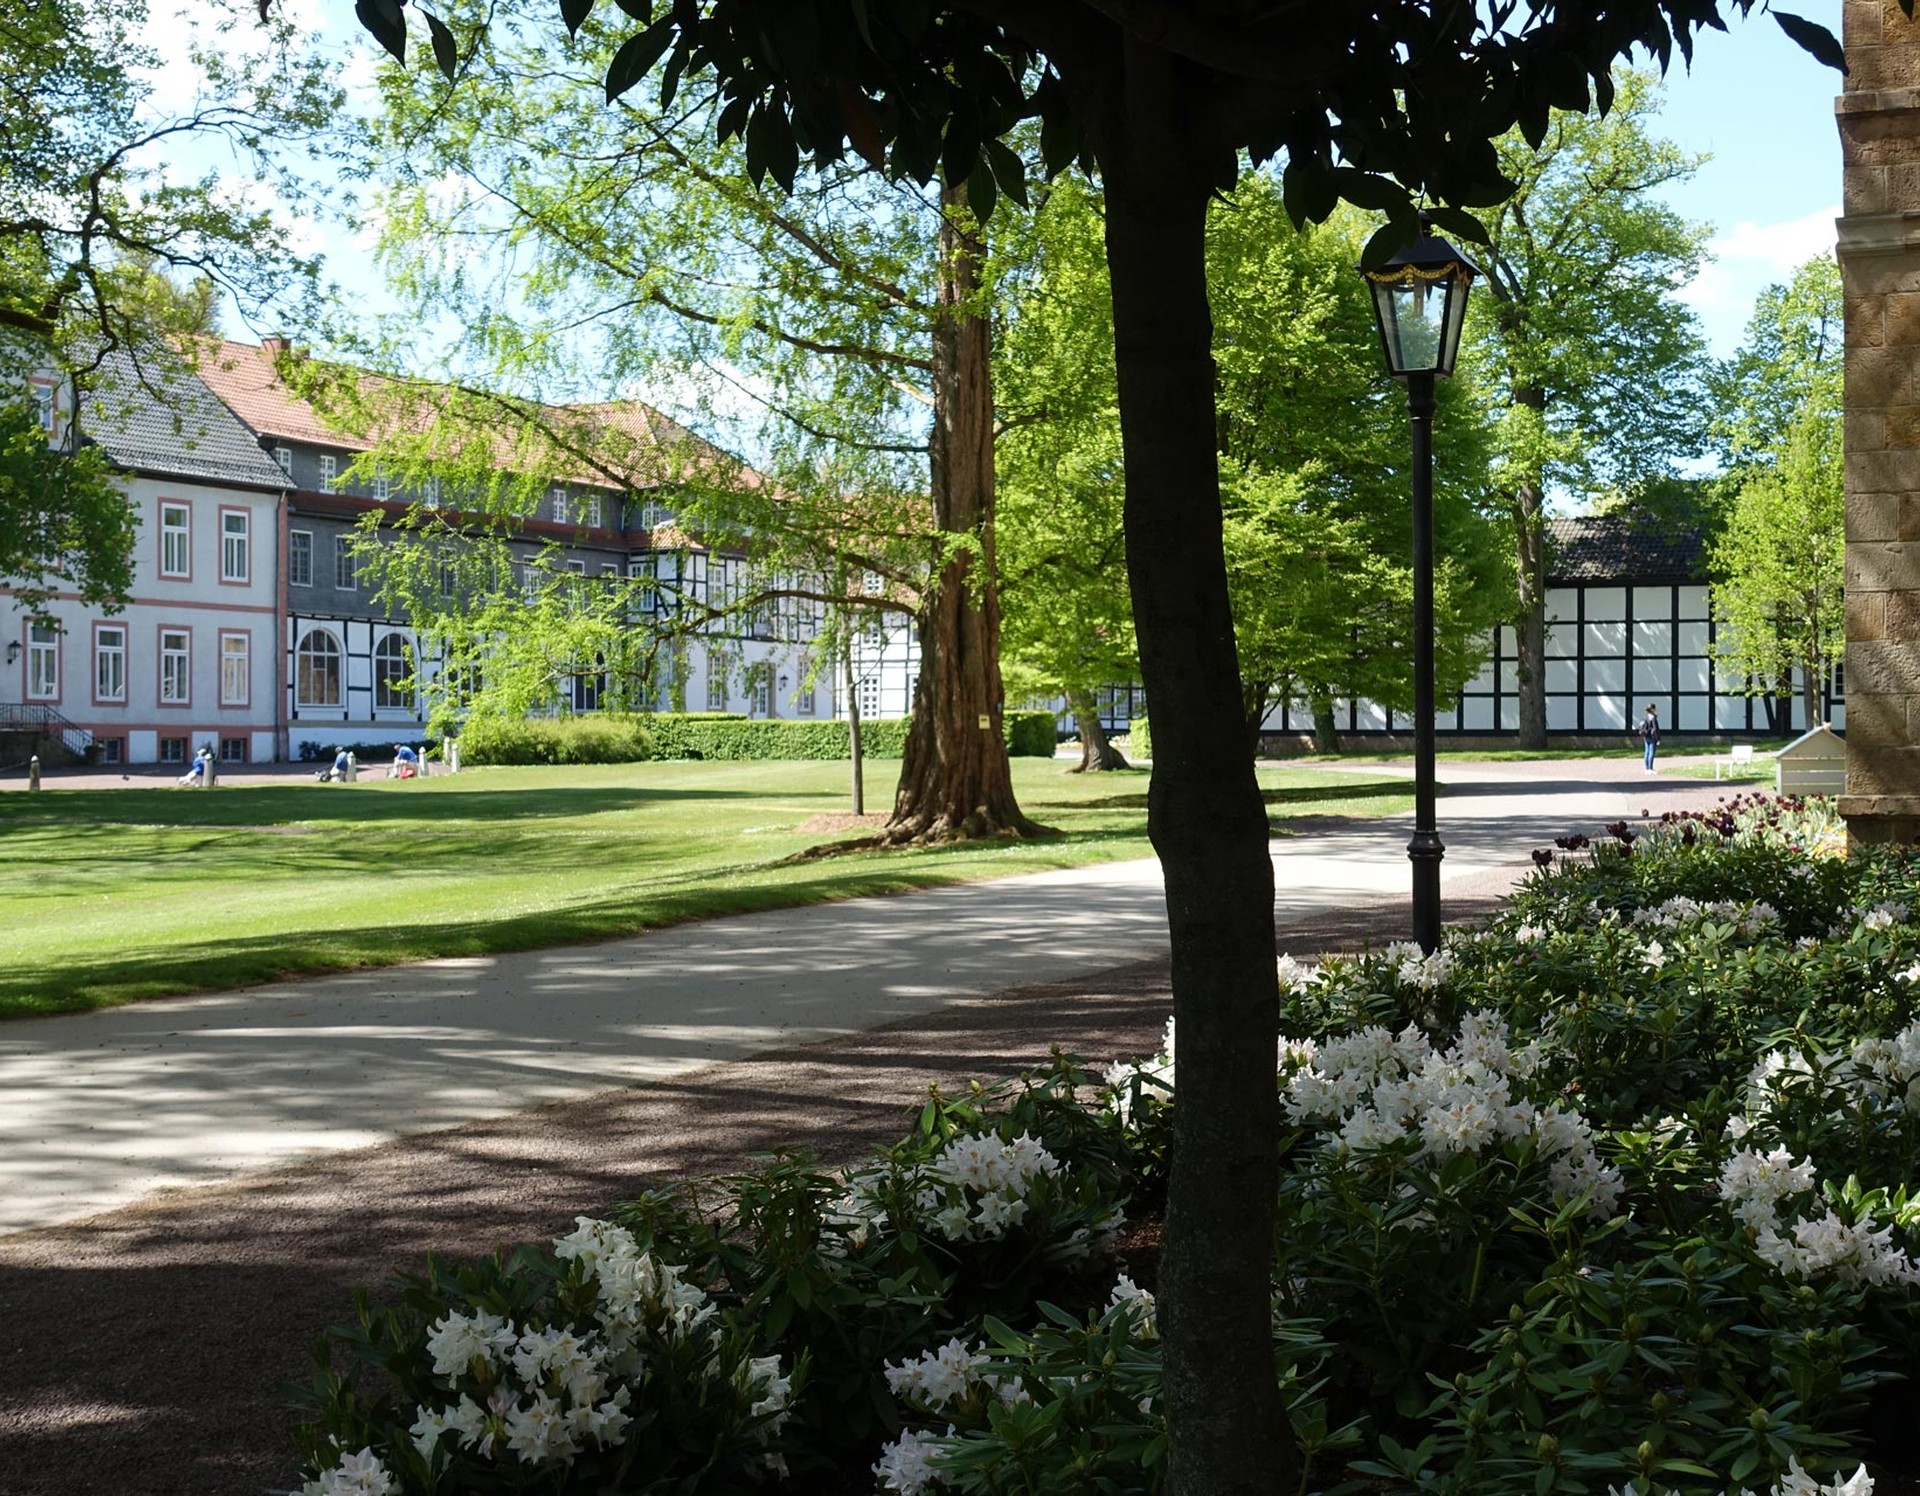 Blick auf verschiedene Gebäude der Anlage des Gräflichen Parks in Bad Driburg.